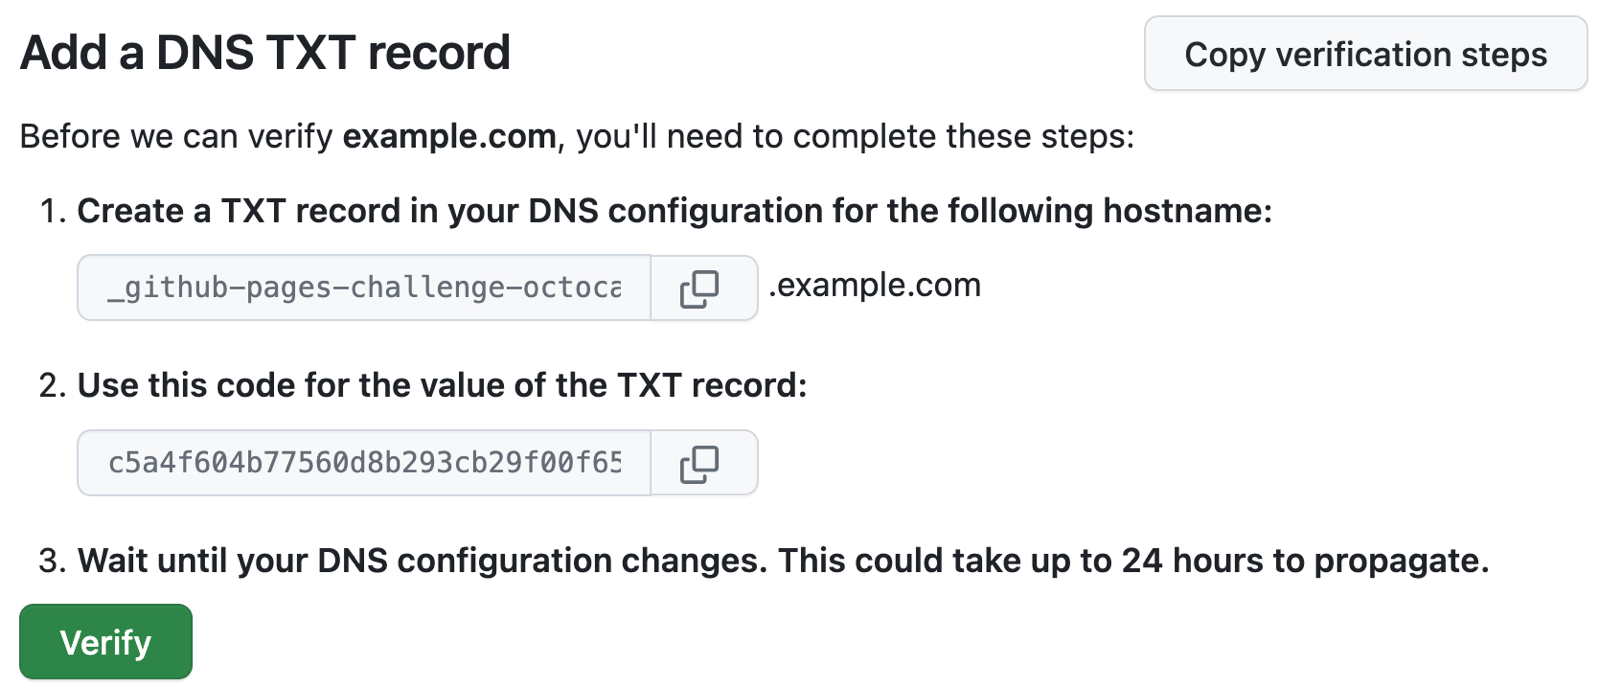 Снимок экрана: инструкции GitHub Pages по добавлению записи ТИПА TXT в конфигурацию DNS example.com.